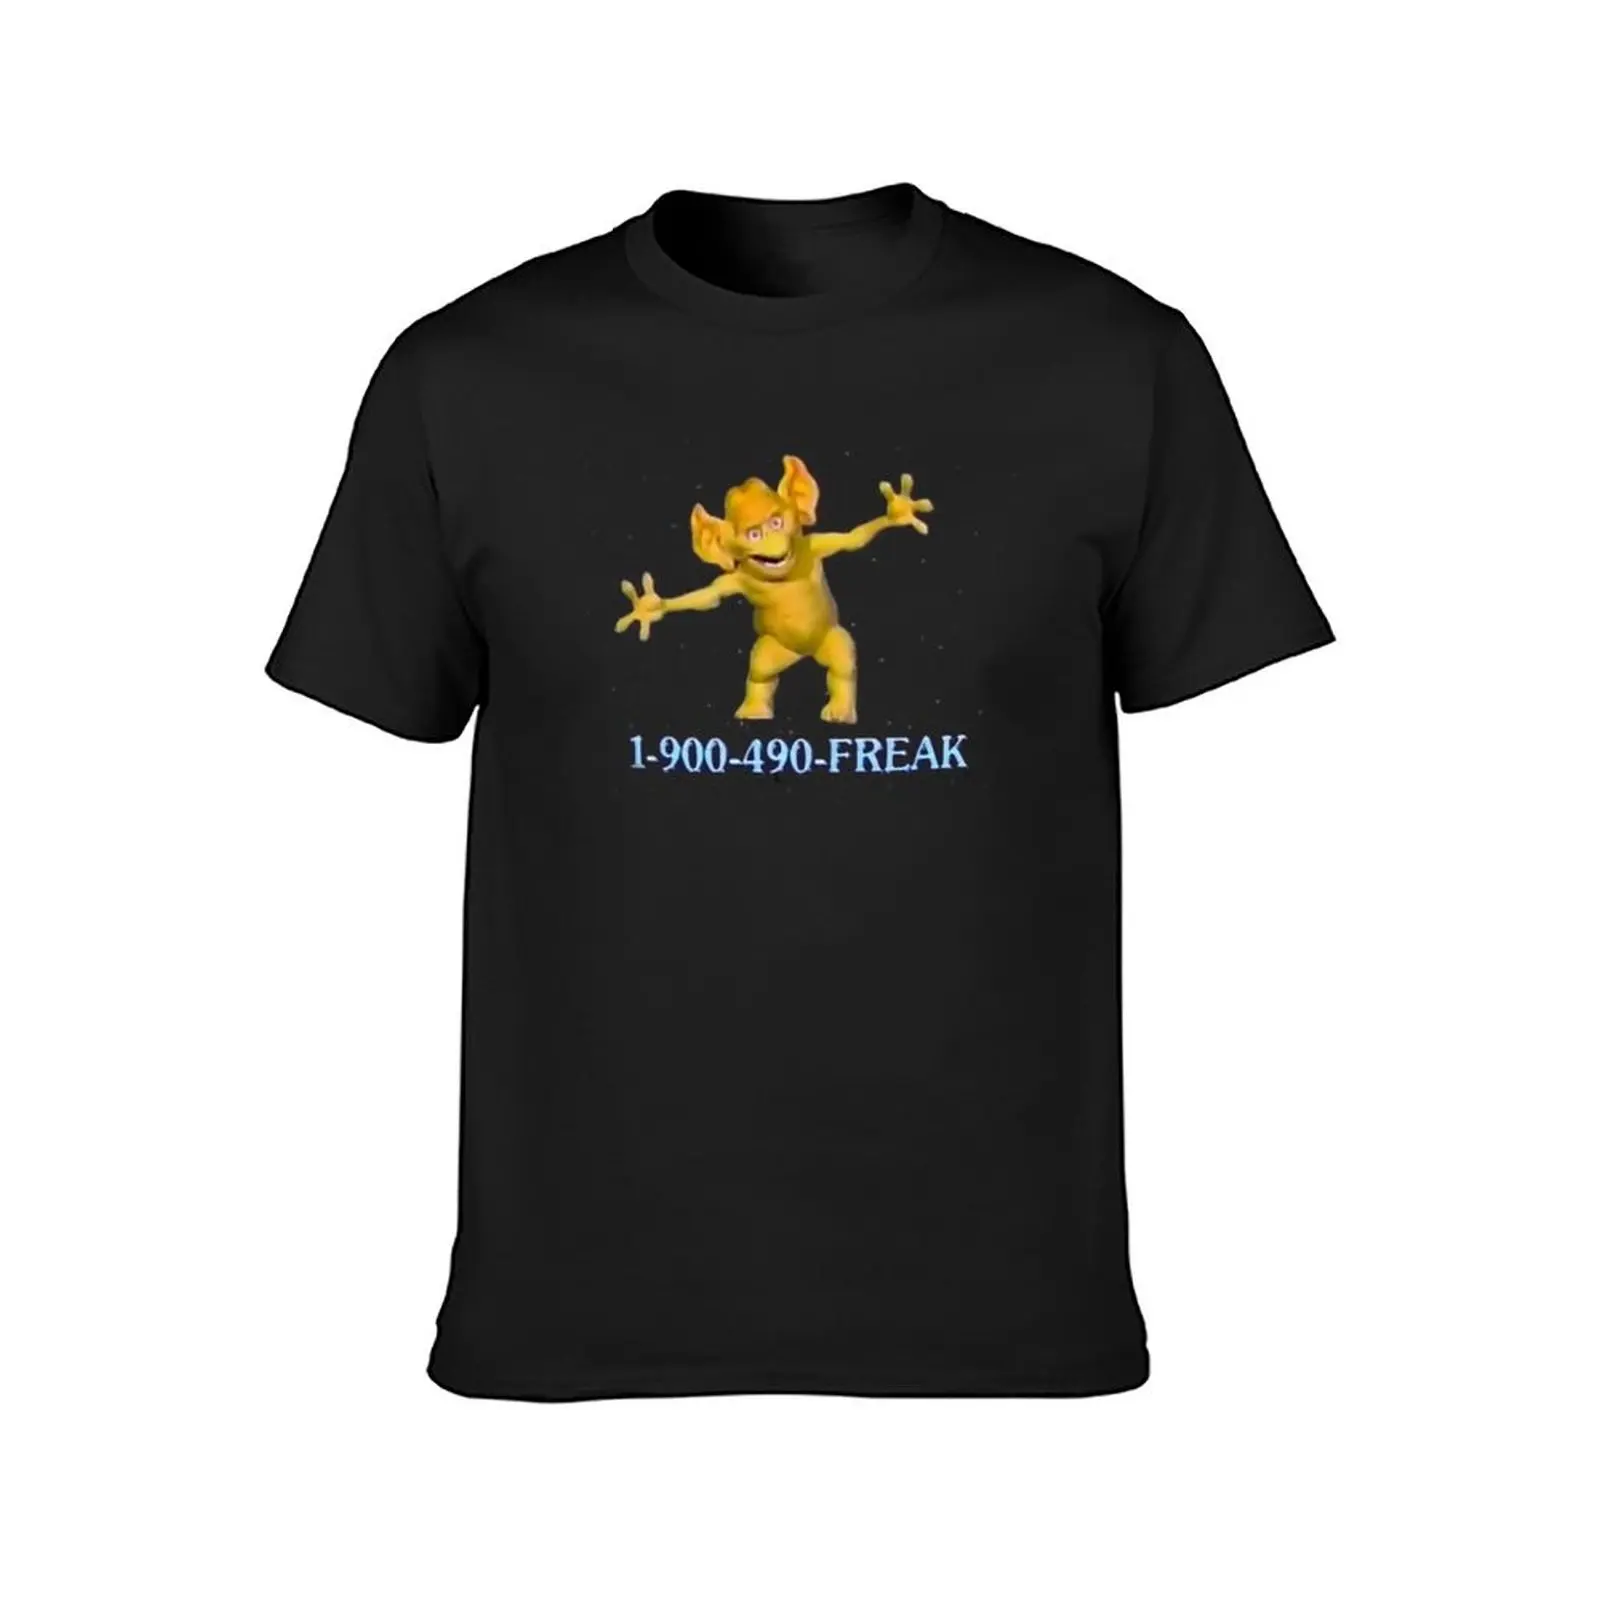 Camiseta de Freddie Freaker para hombre, ropa kawaii vintage, camisetas gráficas